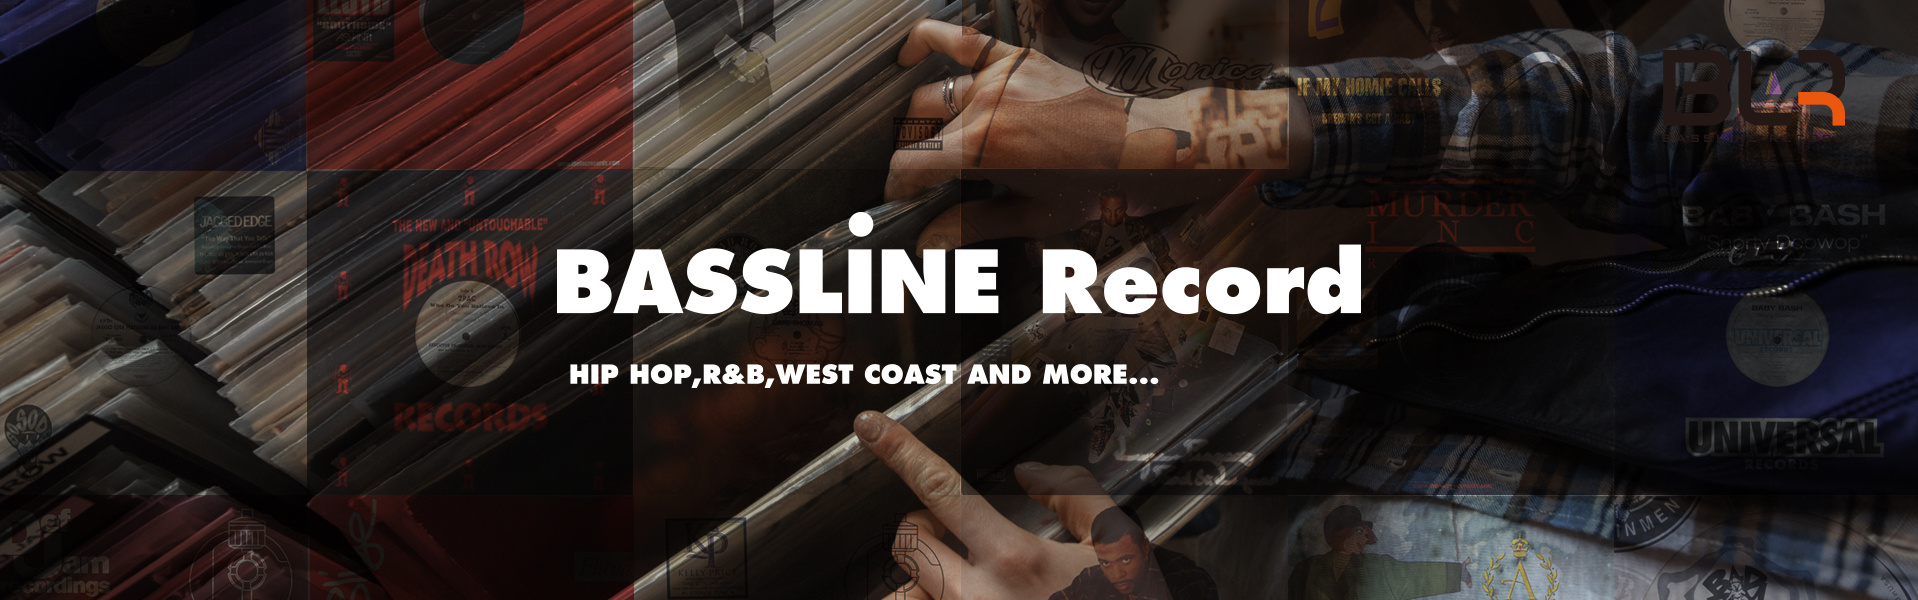 BASSLINE RECORD | VANITY